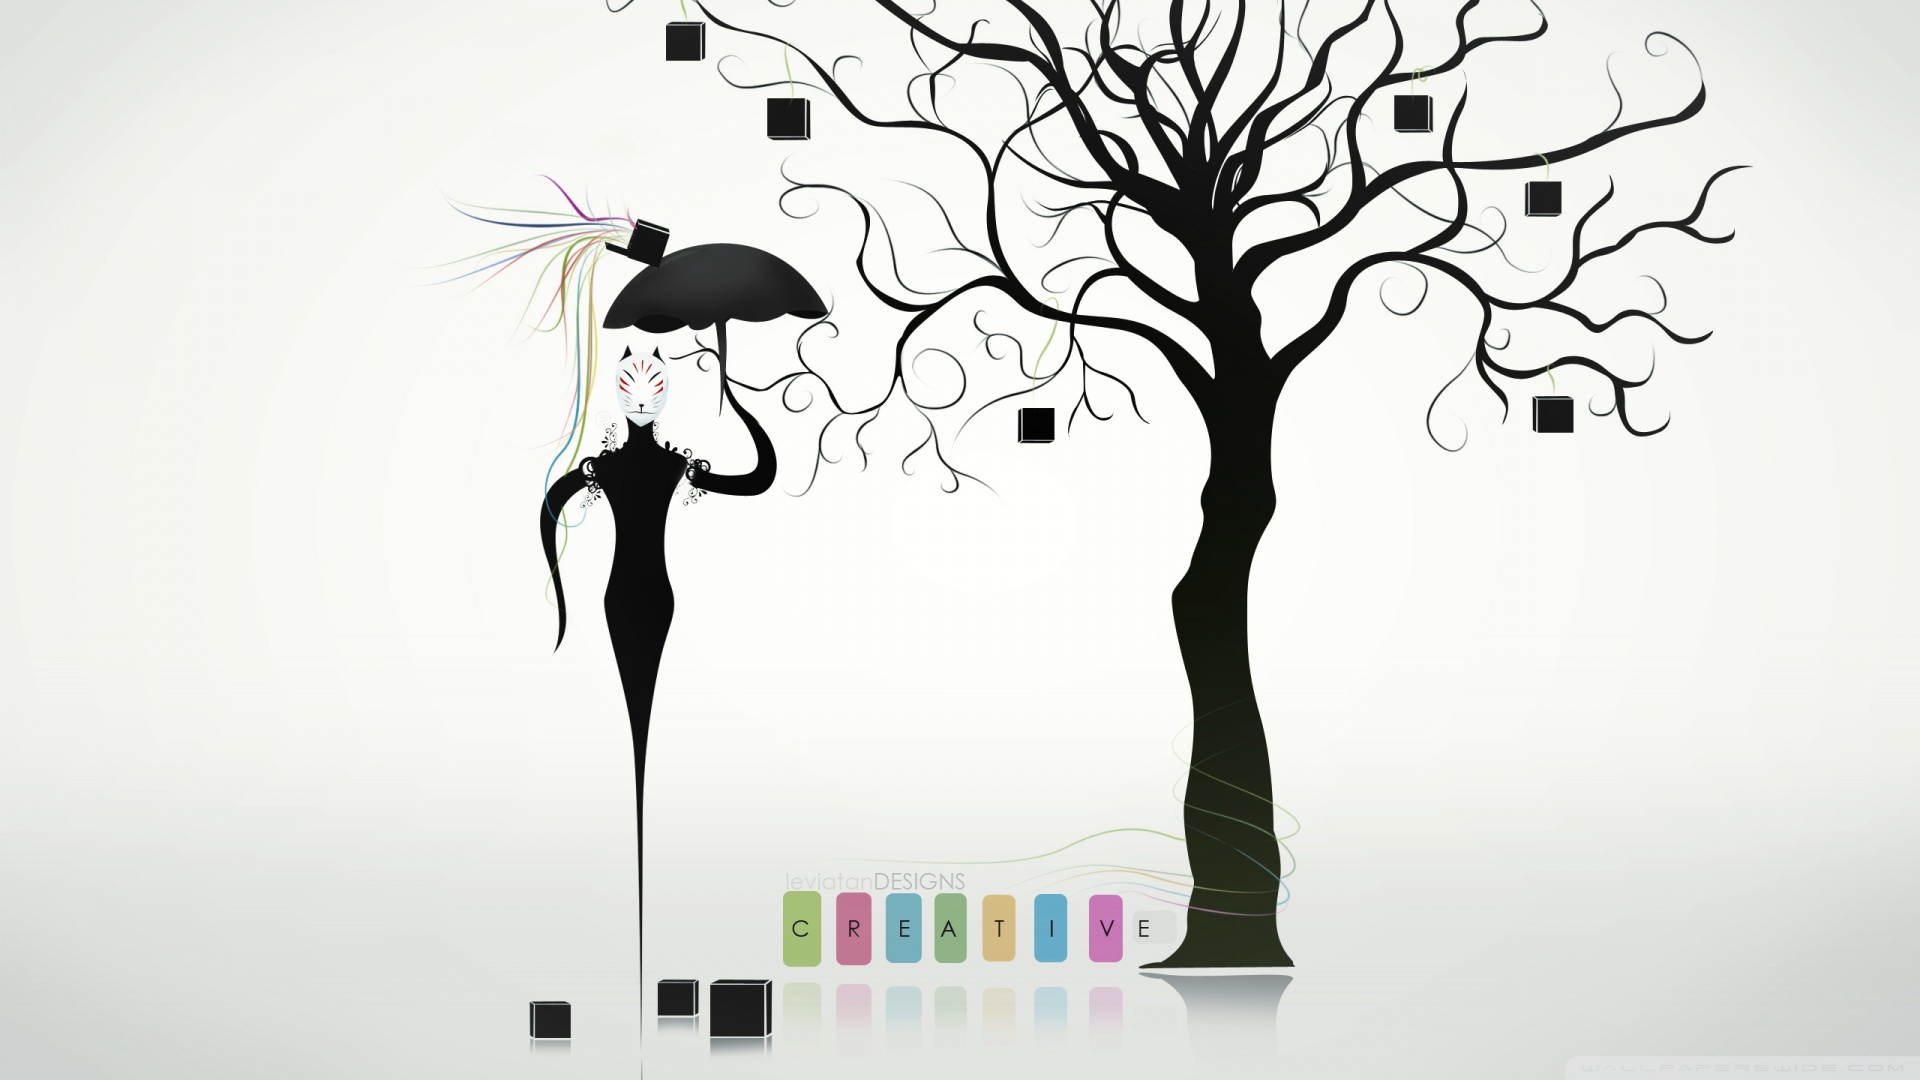 Creative Design HD desktop wallpaper : High Definition